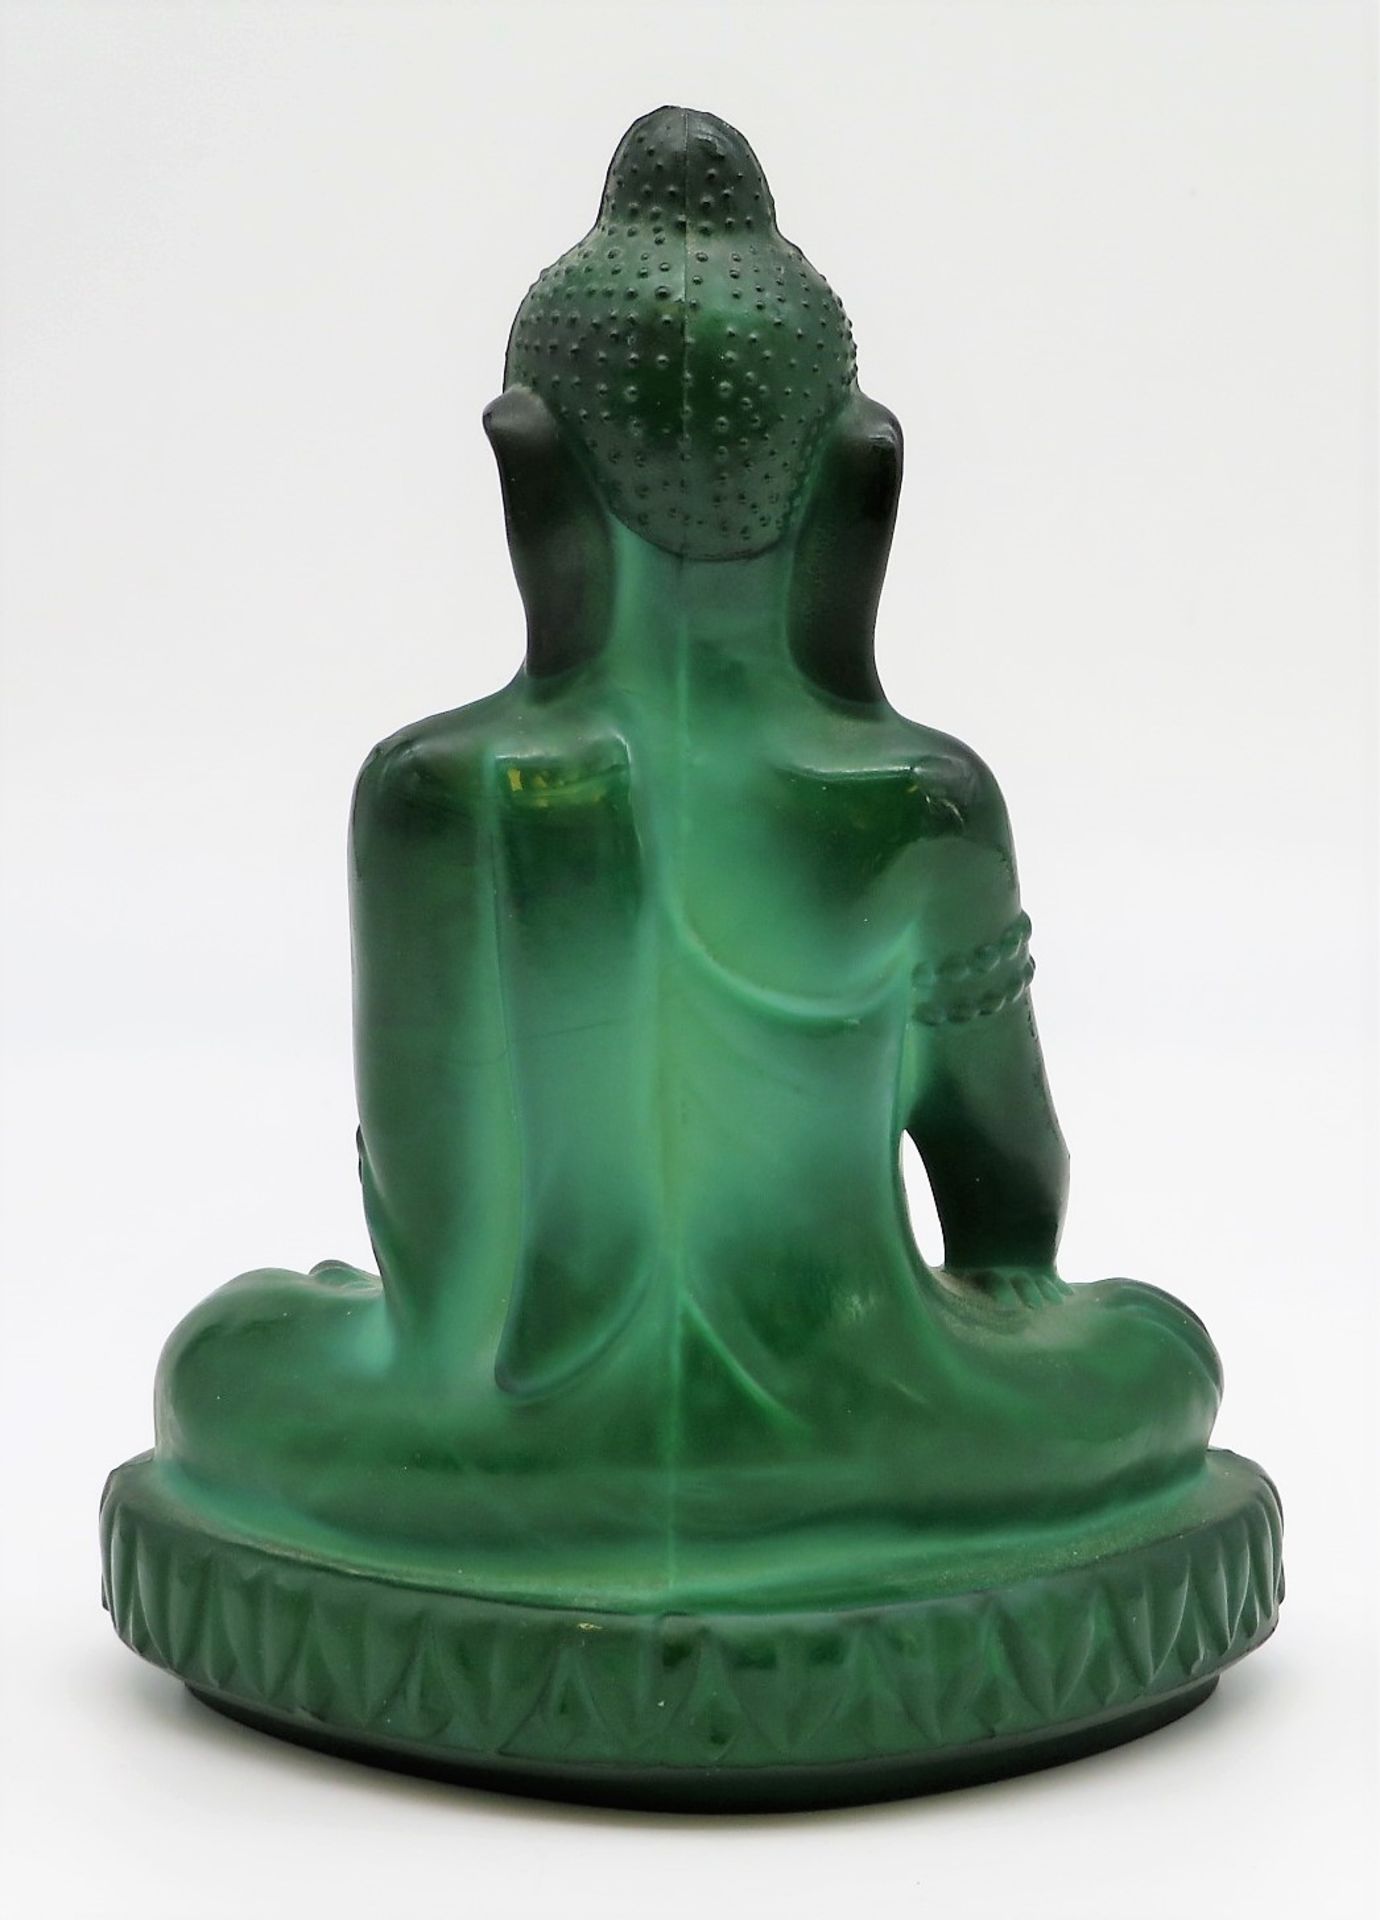 Sitzender Buddha, Gablonz, Curt Schlevogt, um 1920/30, grünes Malachitglas, 21 x 15 x 11 cm. - Bild 2 aus 2